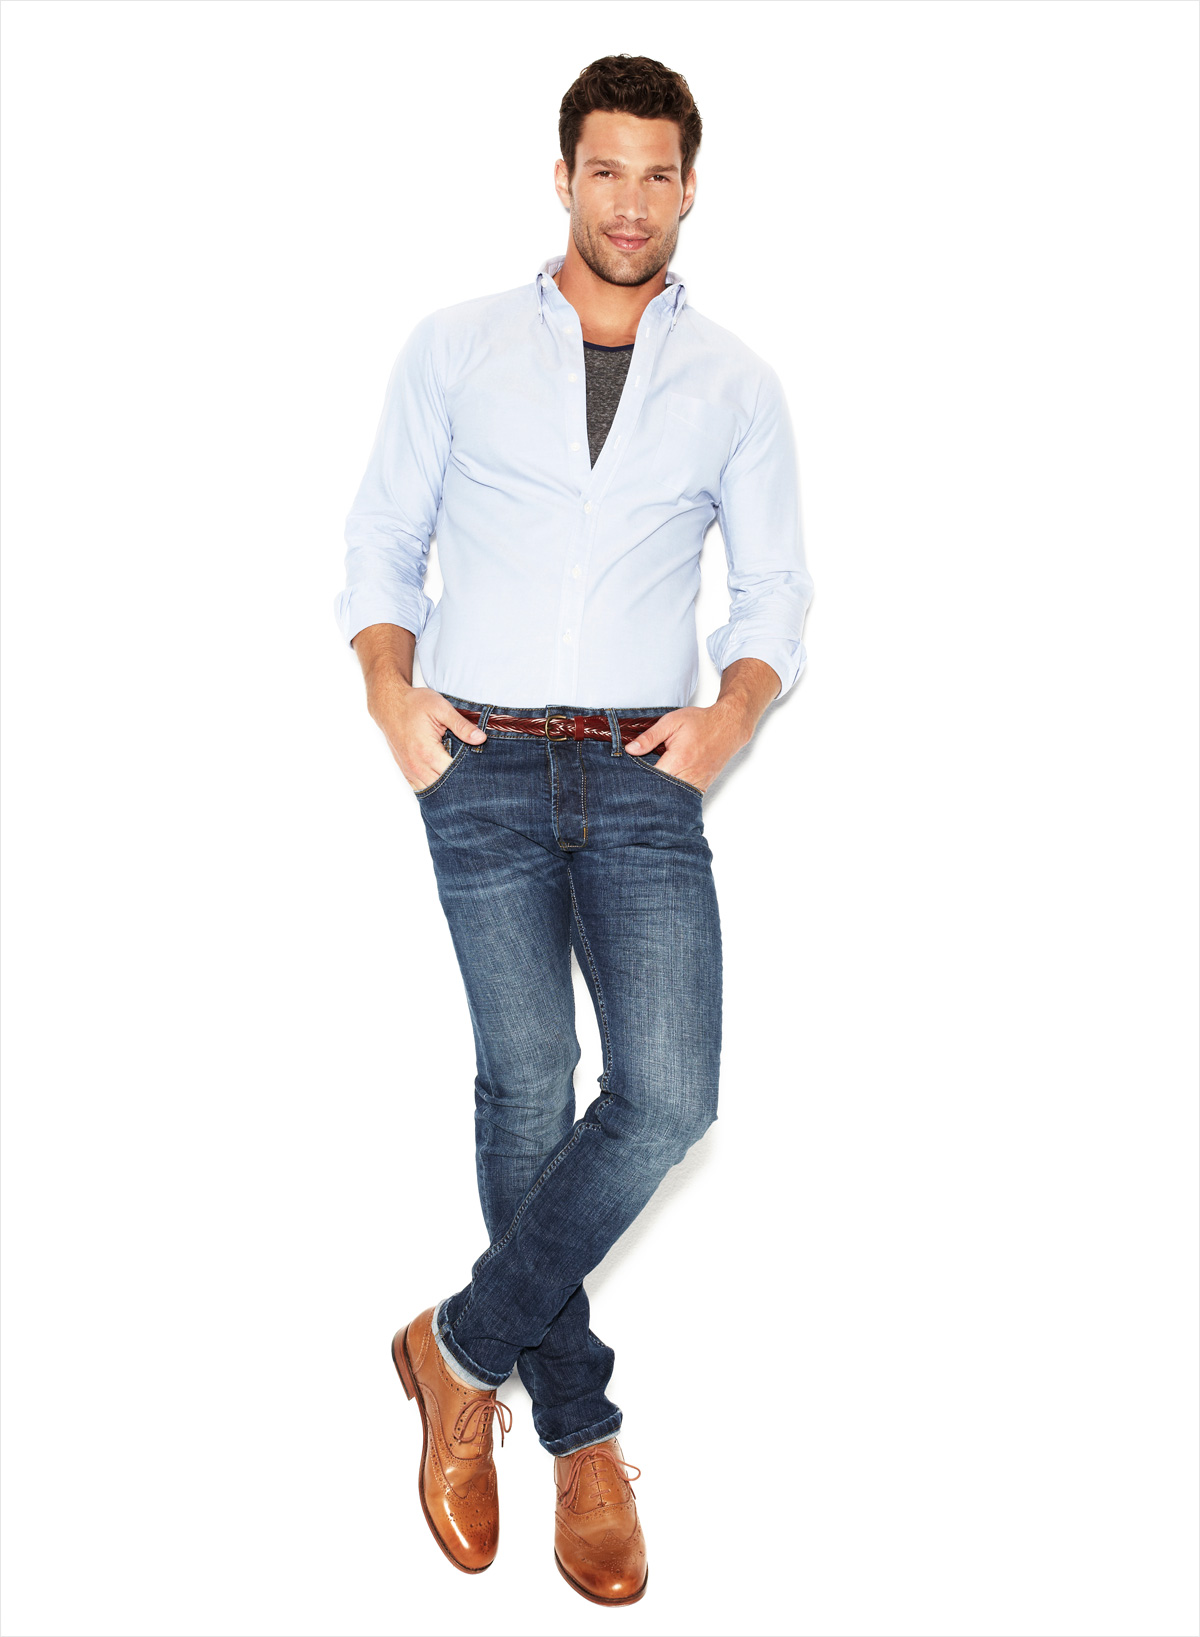 He is wearing jeans. Мужчина в джинсах. Джинсы мужские модные. Модели мужчины в джинсах. Мужчина в полный рост.